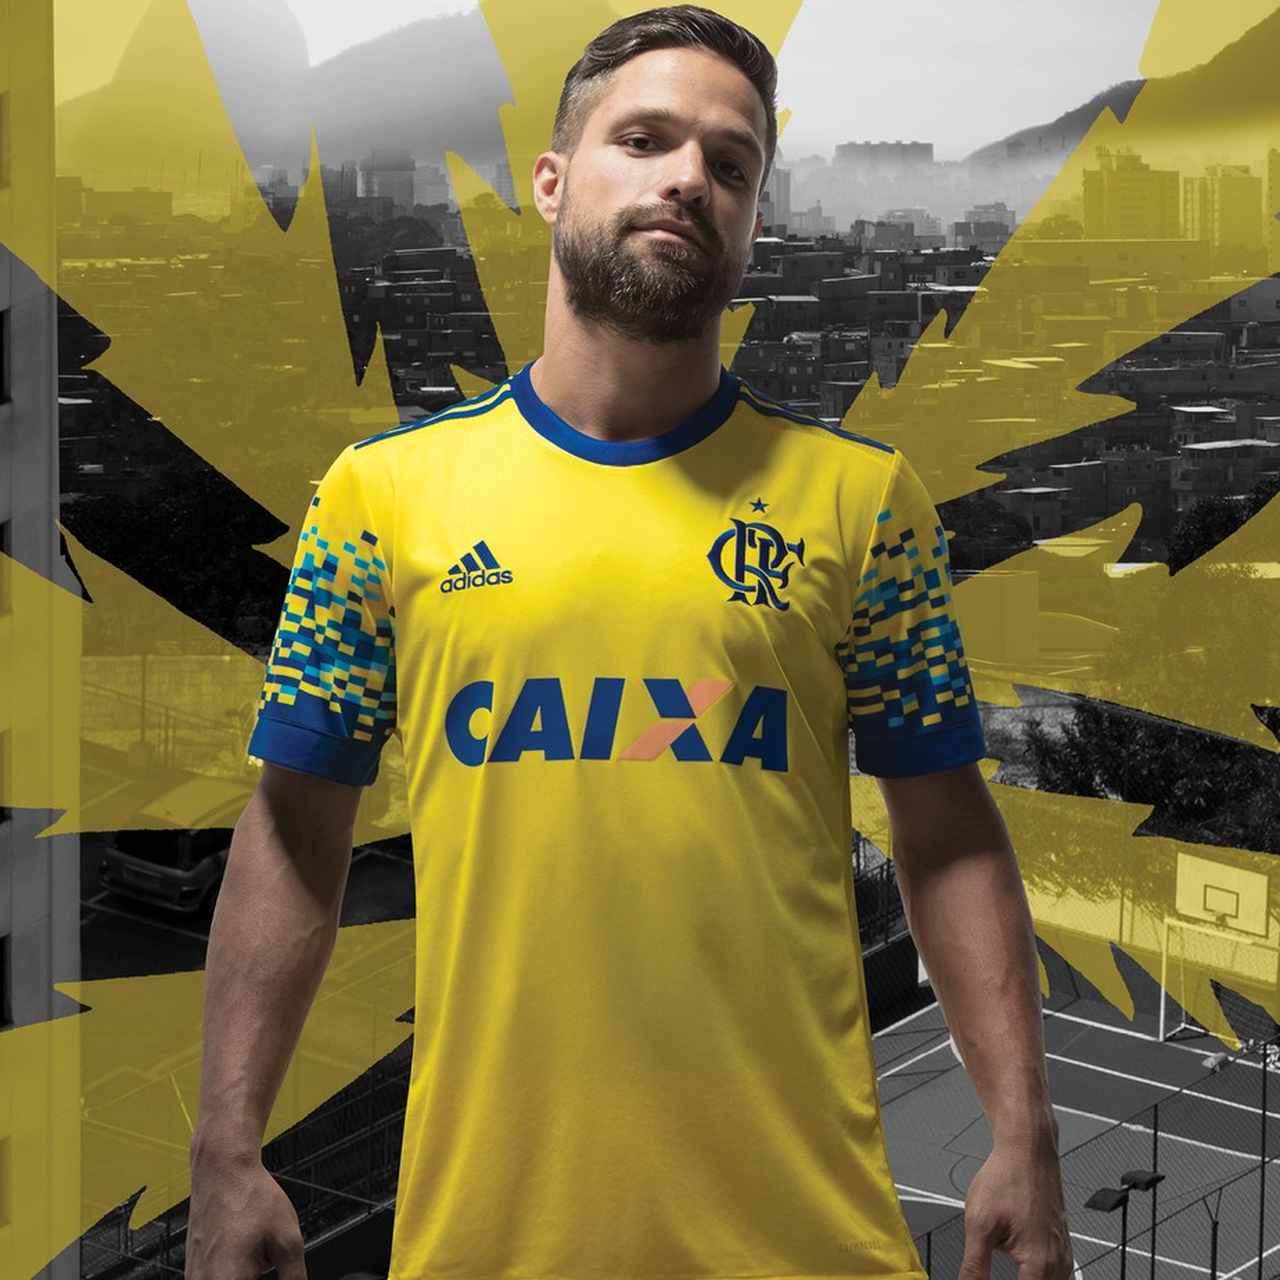 O Flamengo já havia entrado em iniciativa semelhante, porém, por intermédio da Adidas. Aconteceu em 2017, quando a fabricante de material esportivo criou uma plataforma para esse fim. A camisa vencedora do Flamengo surpreendeu pelas cores, gerou comentários, mas esgotou tão logo foi lançada.